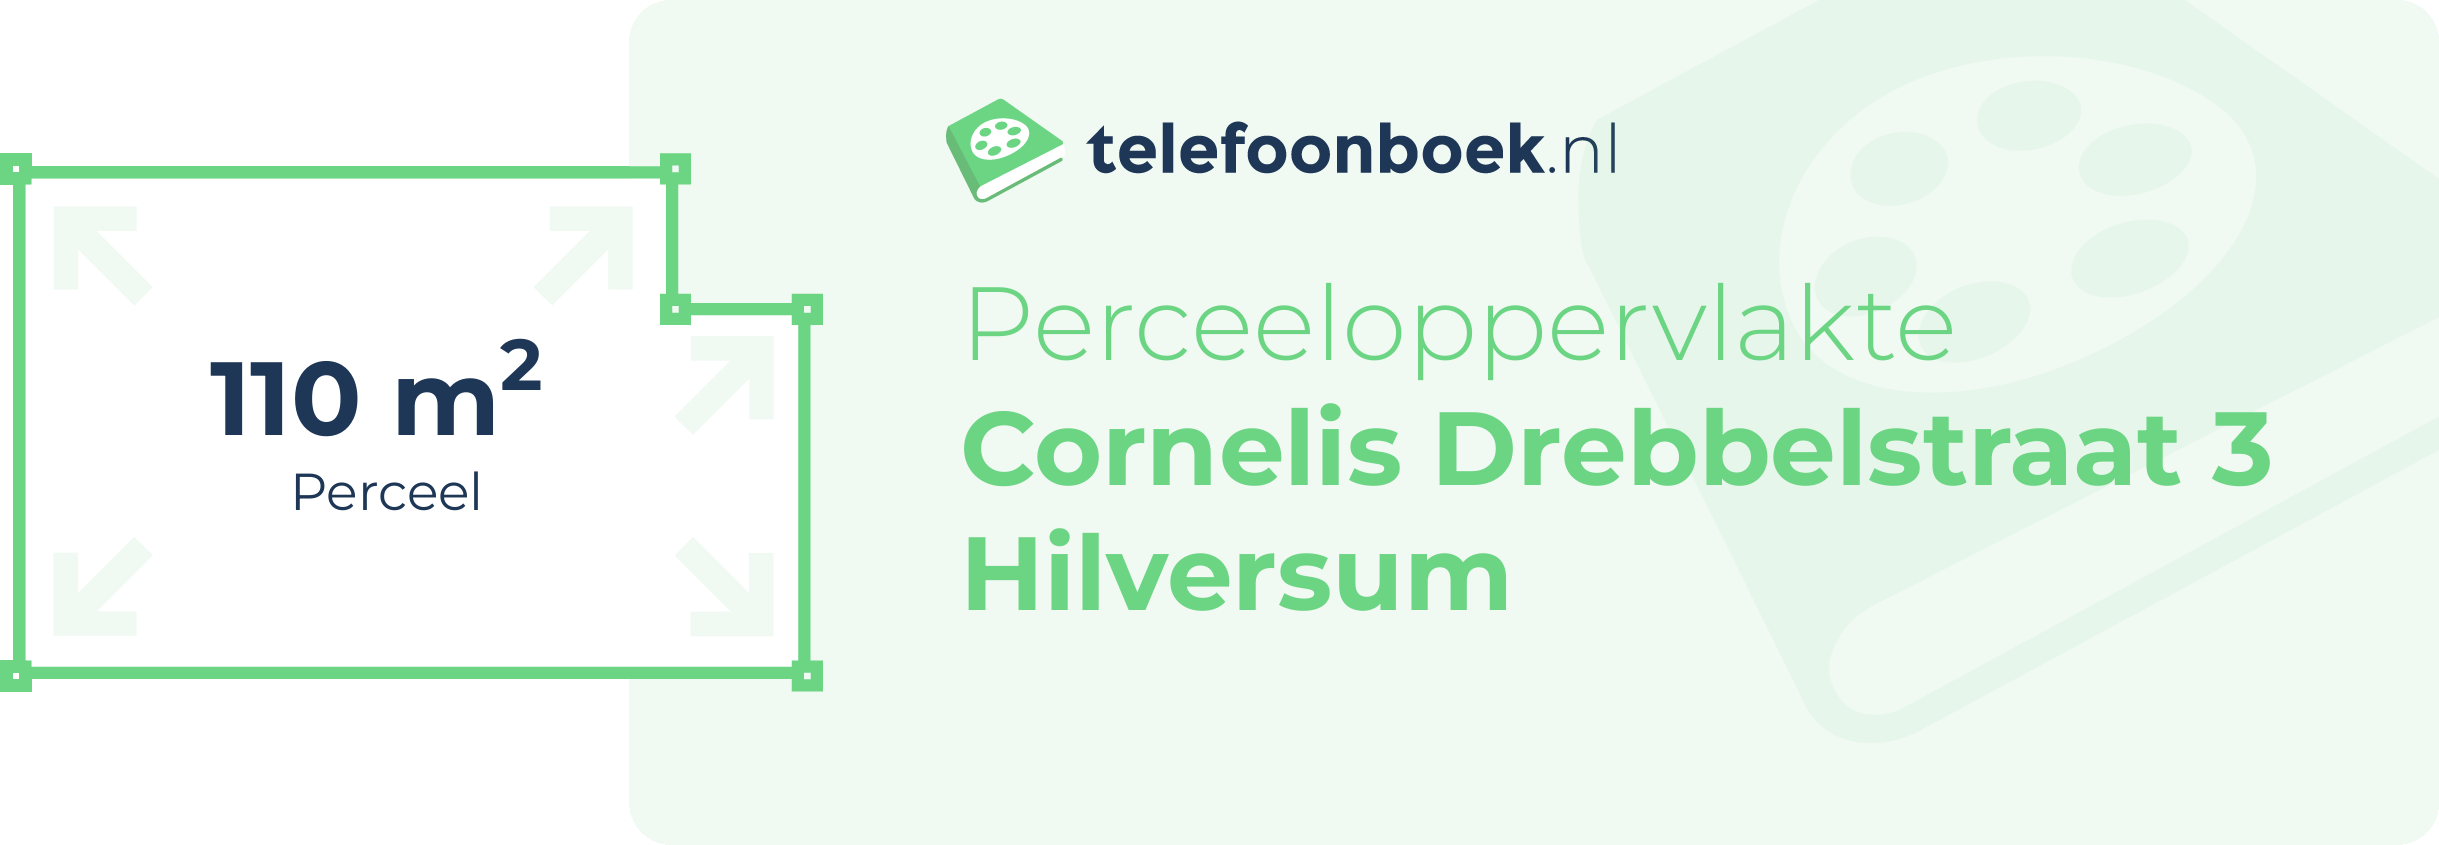 Perceeloppervlakte Cornelis Drebbelstraat 3 Hilversum